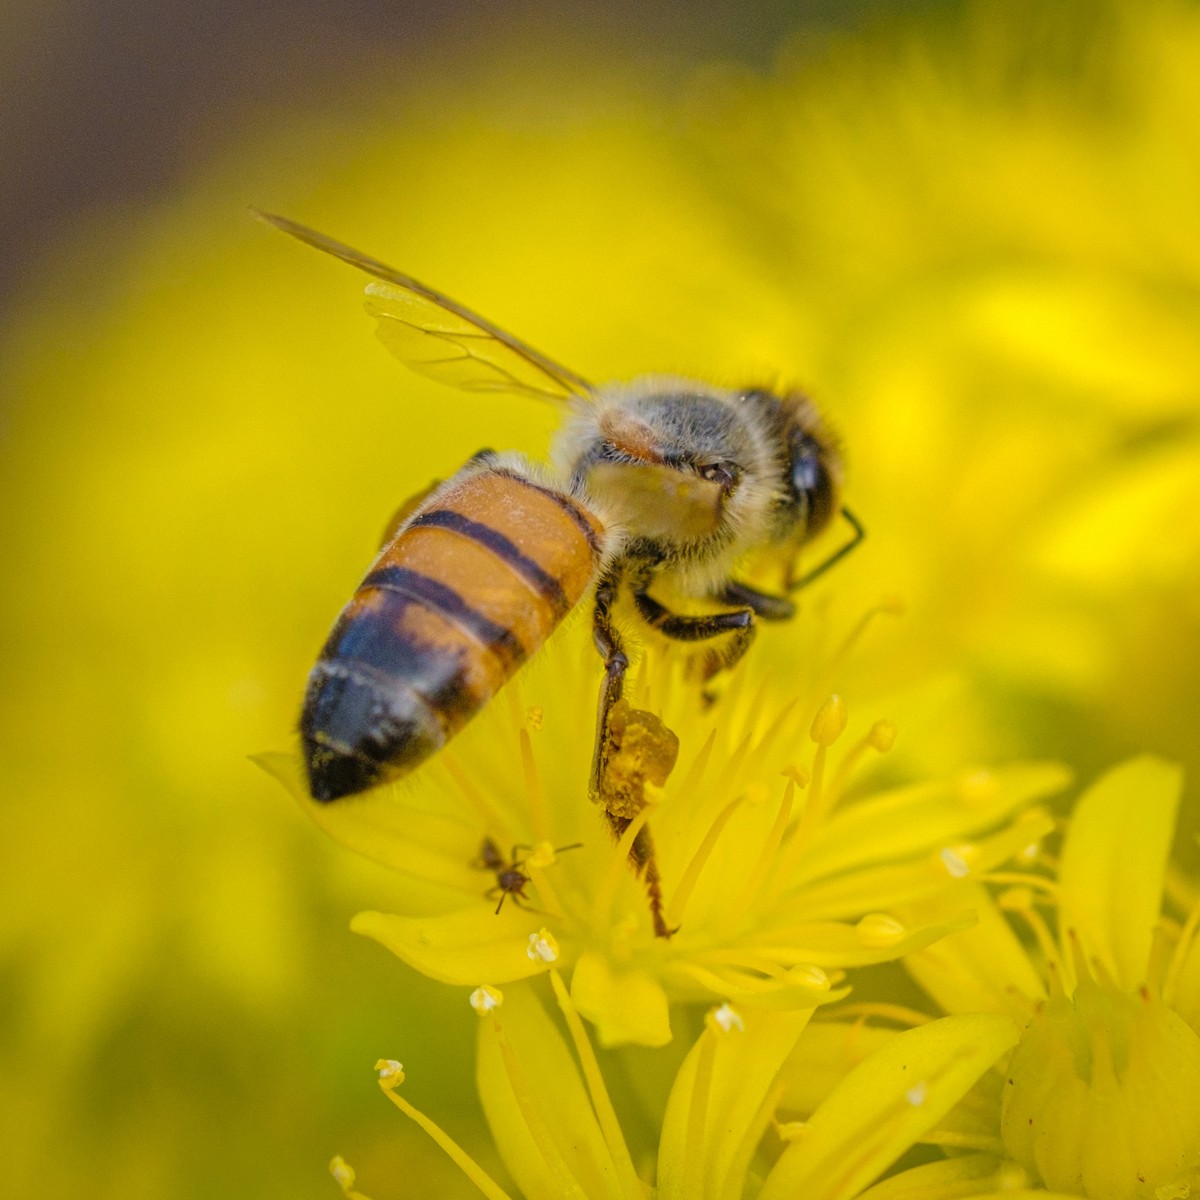 insetos polinizadores, melíferas, apicultura